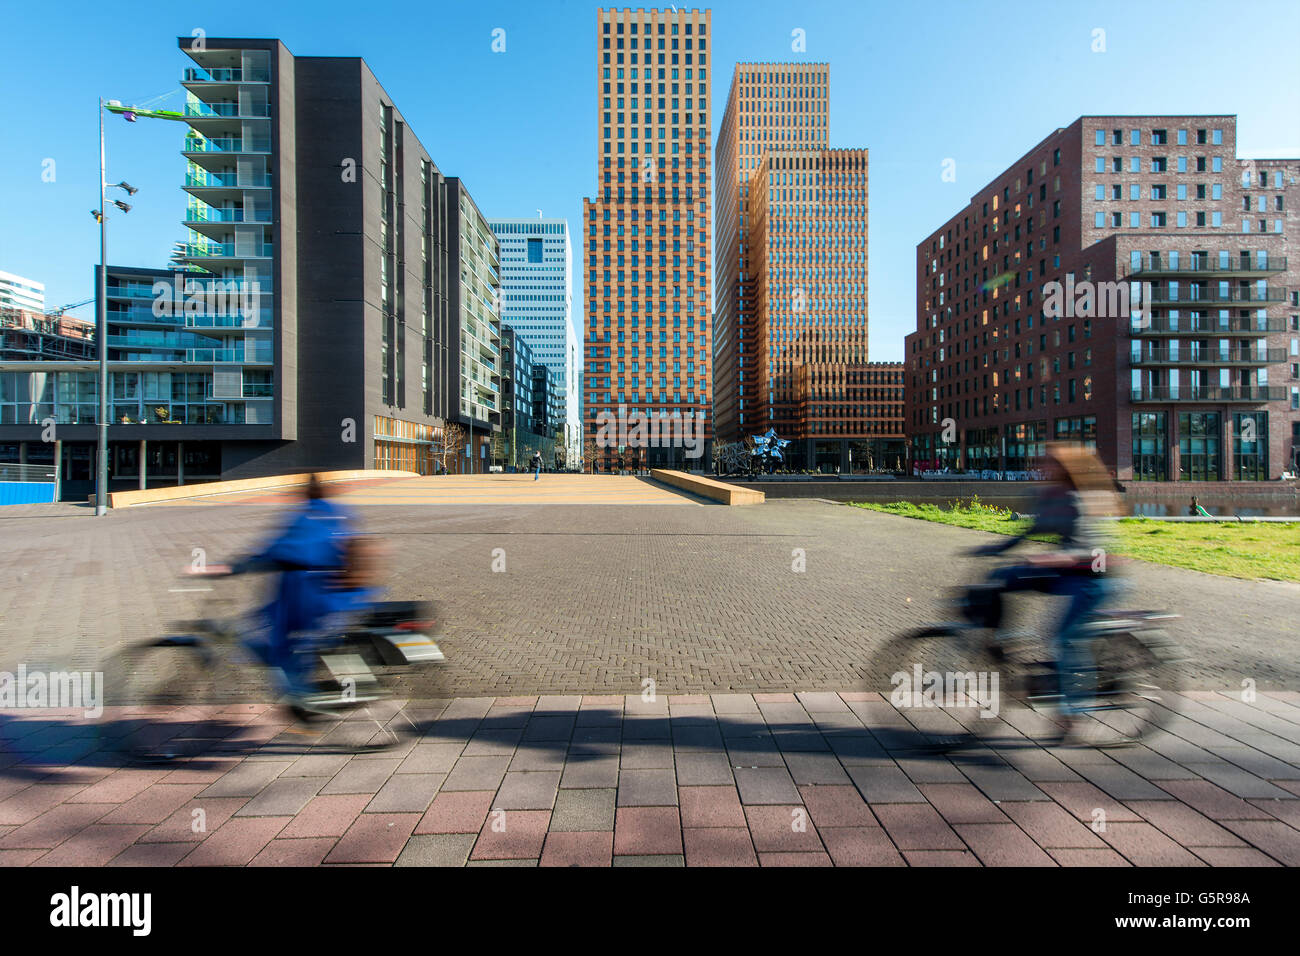 Wolkenkratzer von Amsterdam, Niederlande. Bürogebäude in Amsterdam Zuid, Amsterdam, Niederlande. Radfahren in Amsterdam, Ne Leute Stockfoto